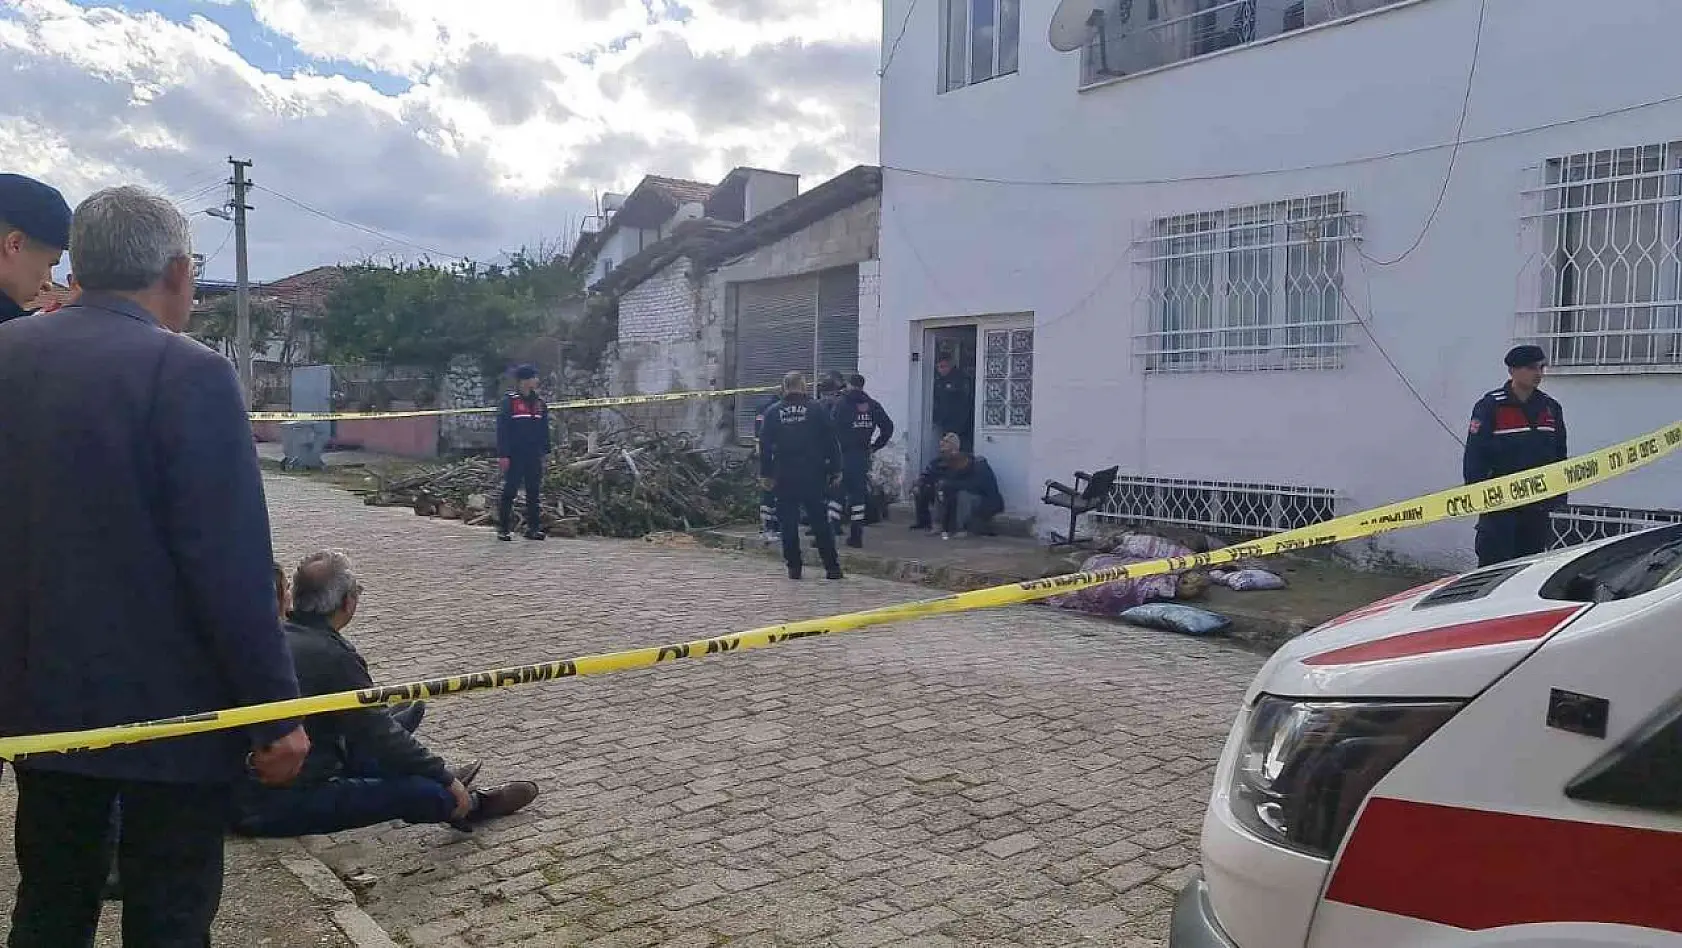 Aydın'da bir anne ve 2 çocuğu evlerinde ölü bulundu